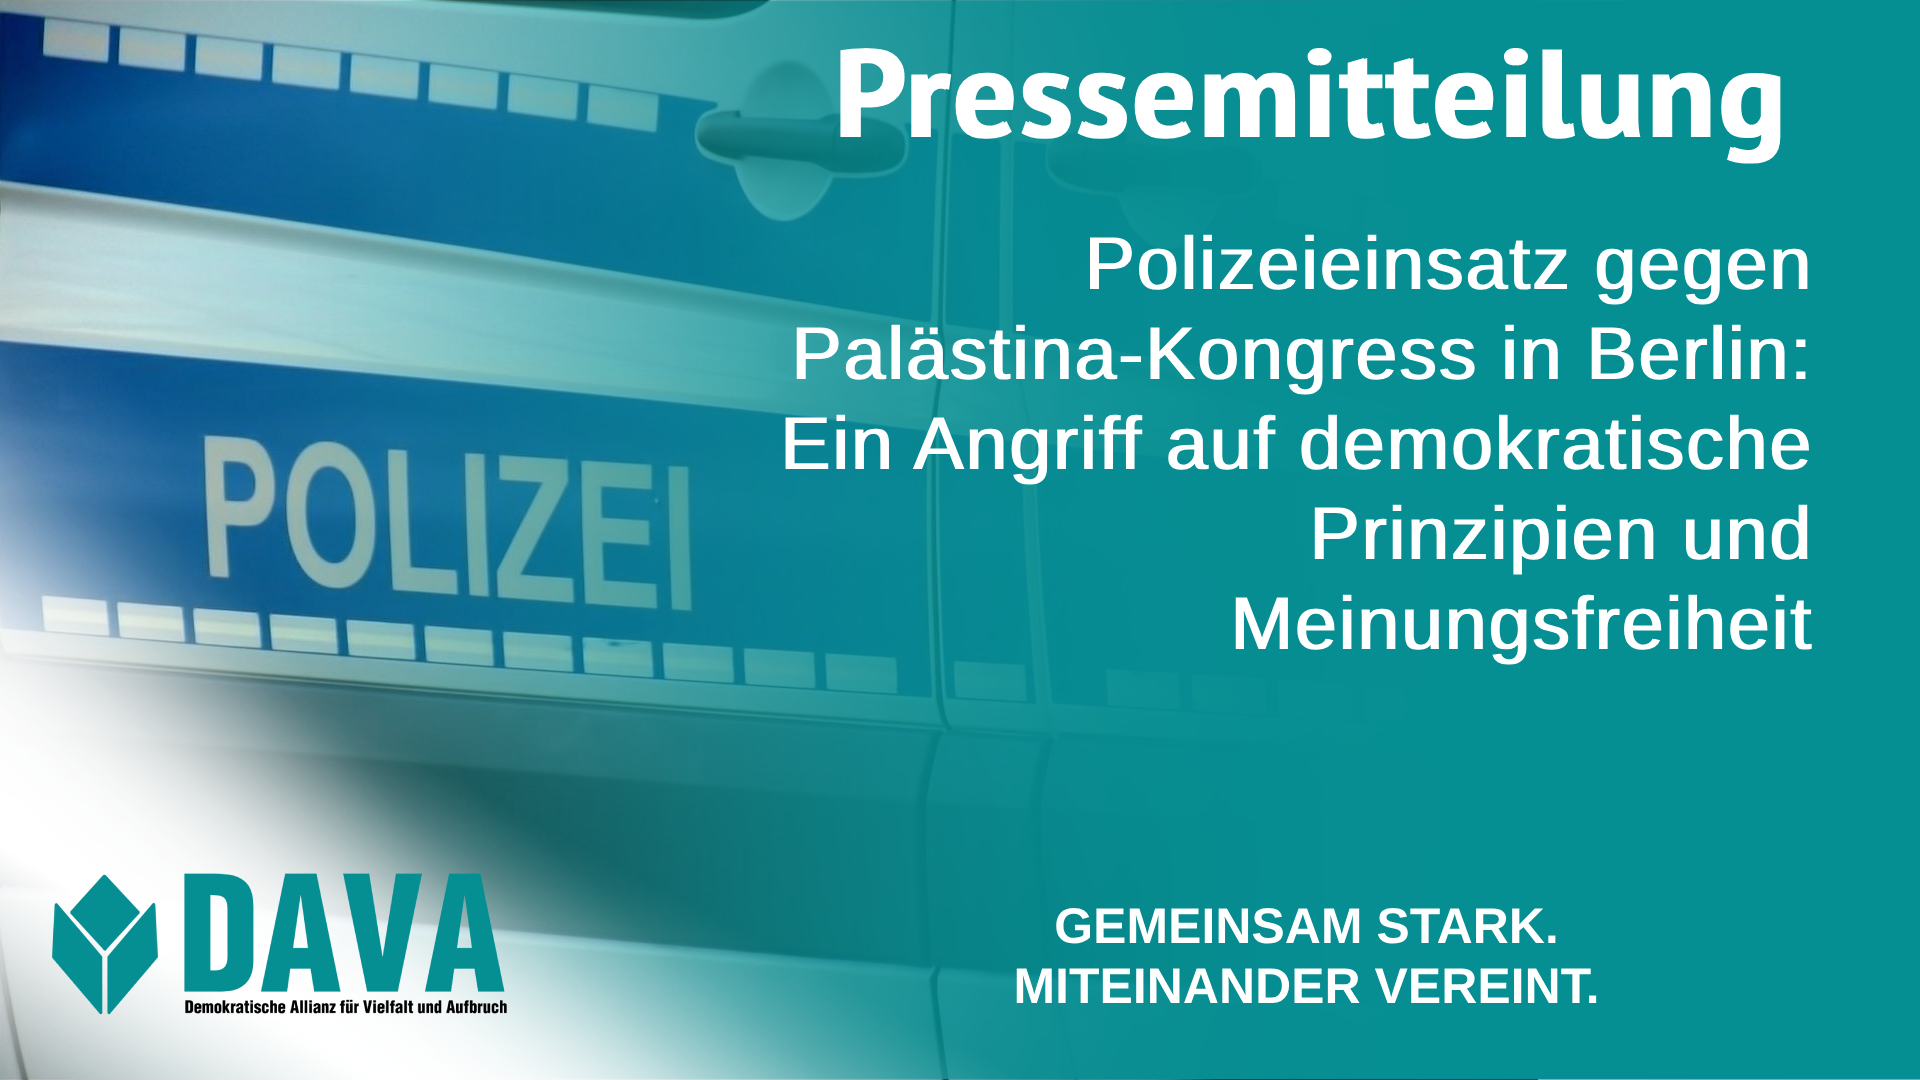 Polizeieinsatz gegen Palästina-Kongress in Berlin: Ein Angriff auf demokratische Prinzipien und Meinungsfreiheit